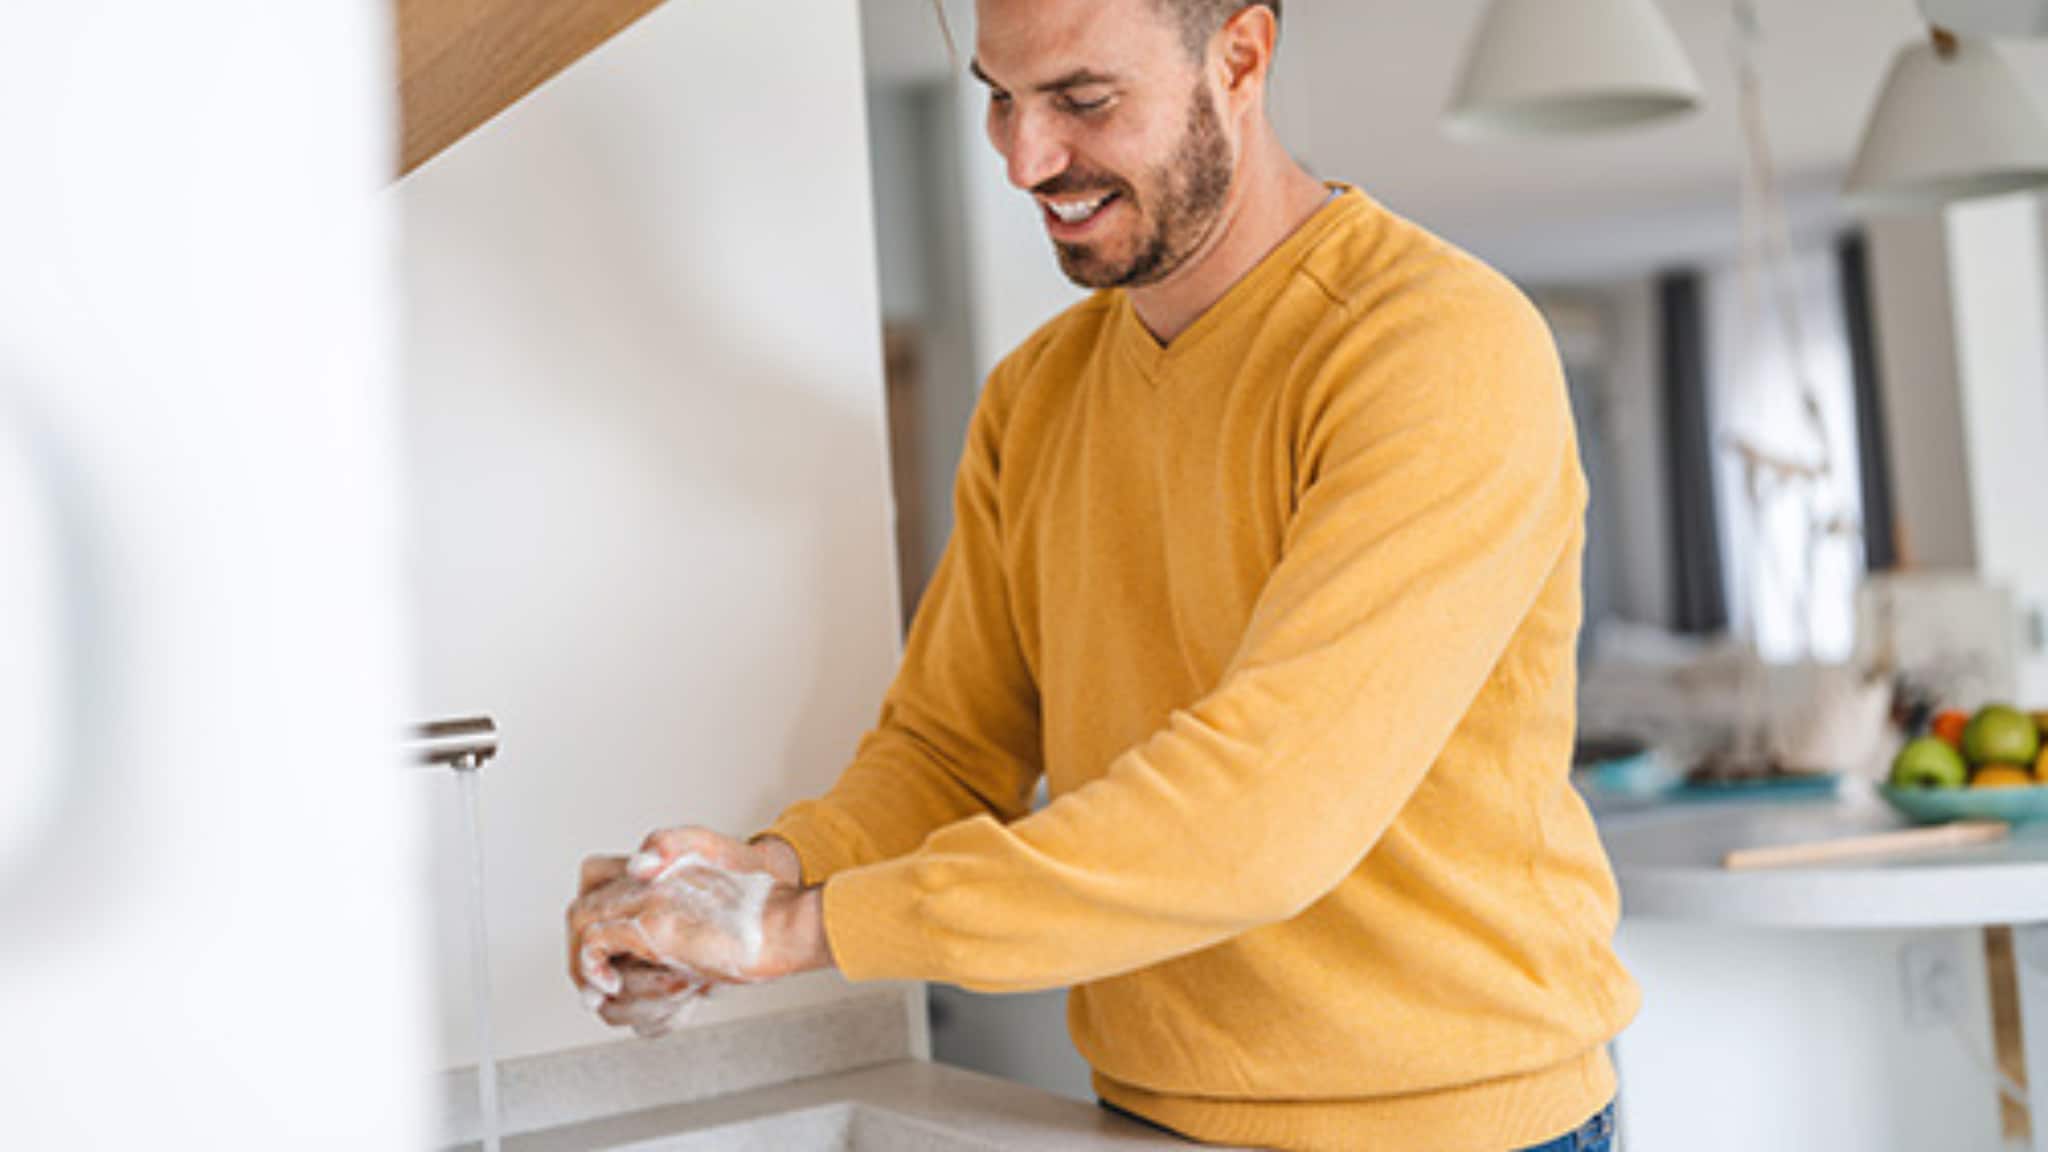 Man washing his hands in kitchen sink